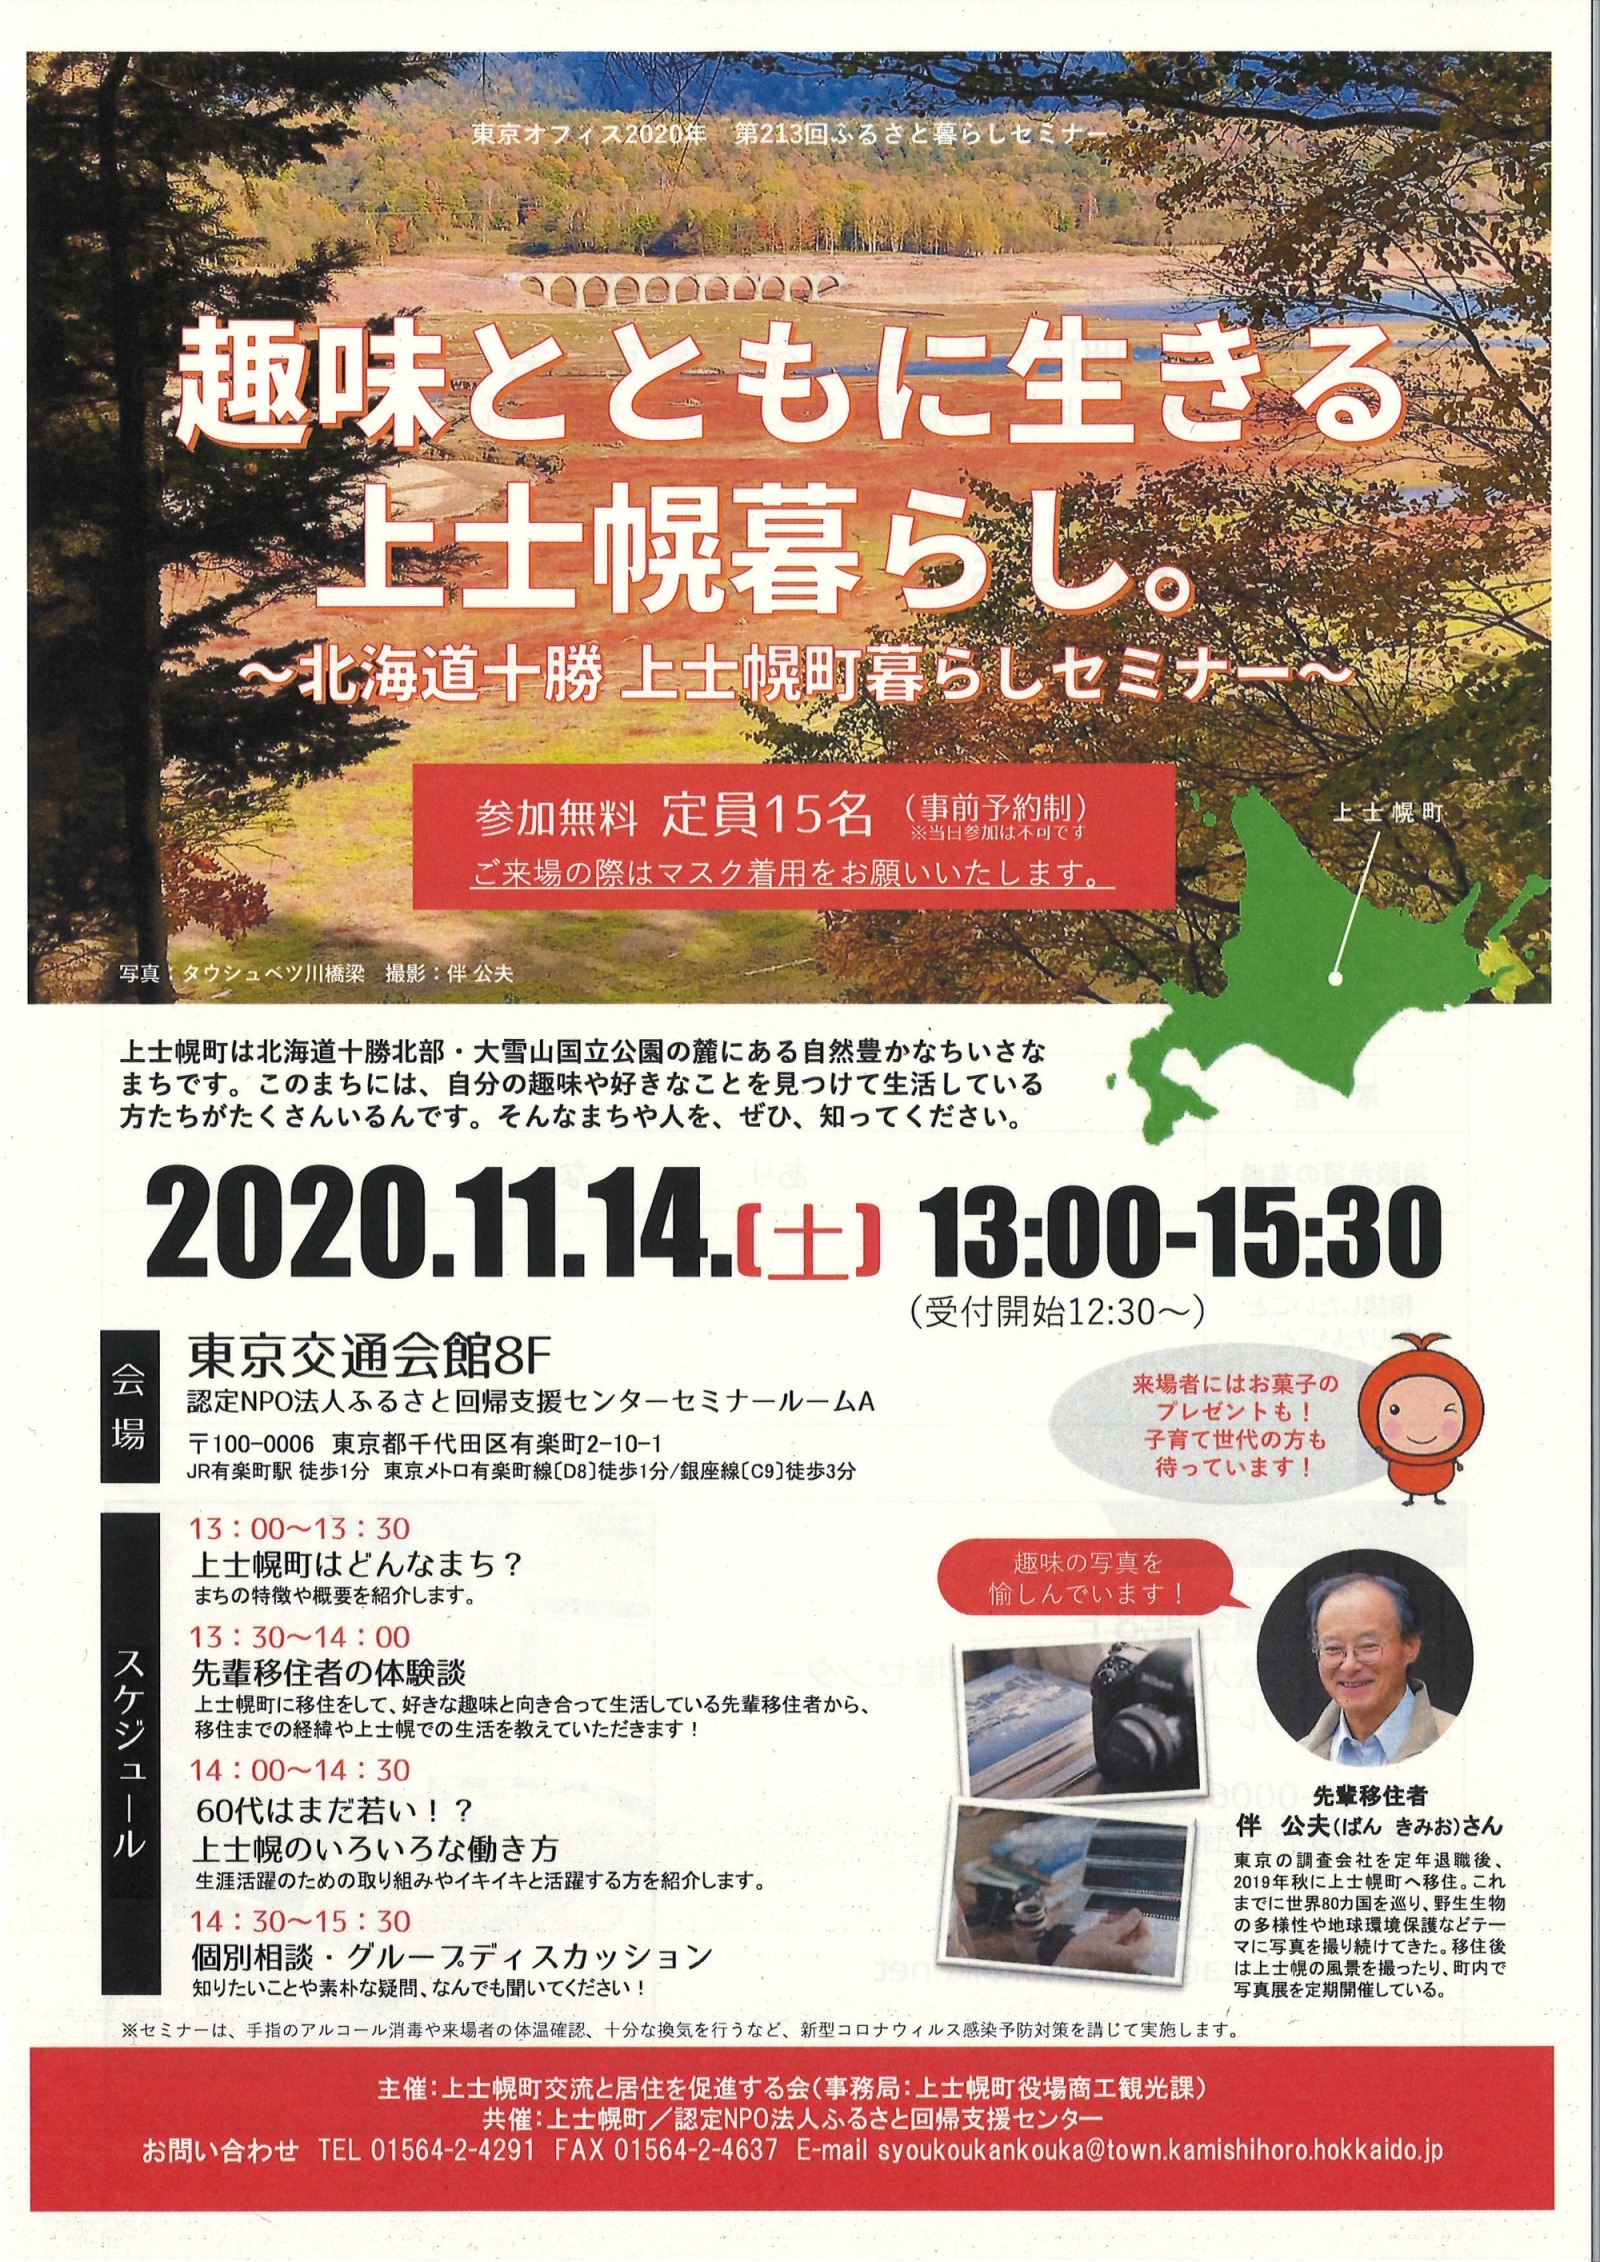 上士幌暮らしセミナー(令和2年11月14日)開催のお知らせの画像